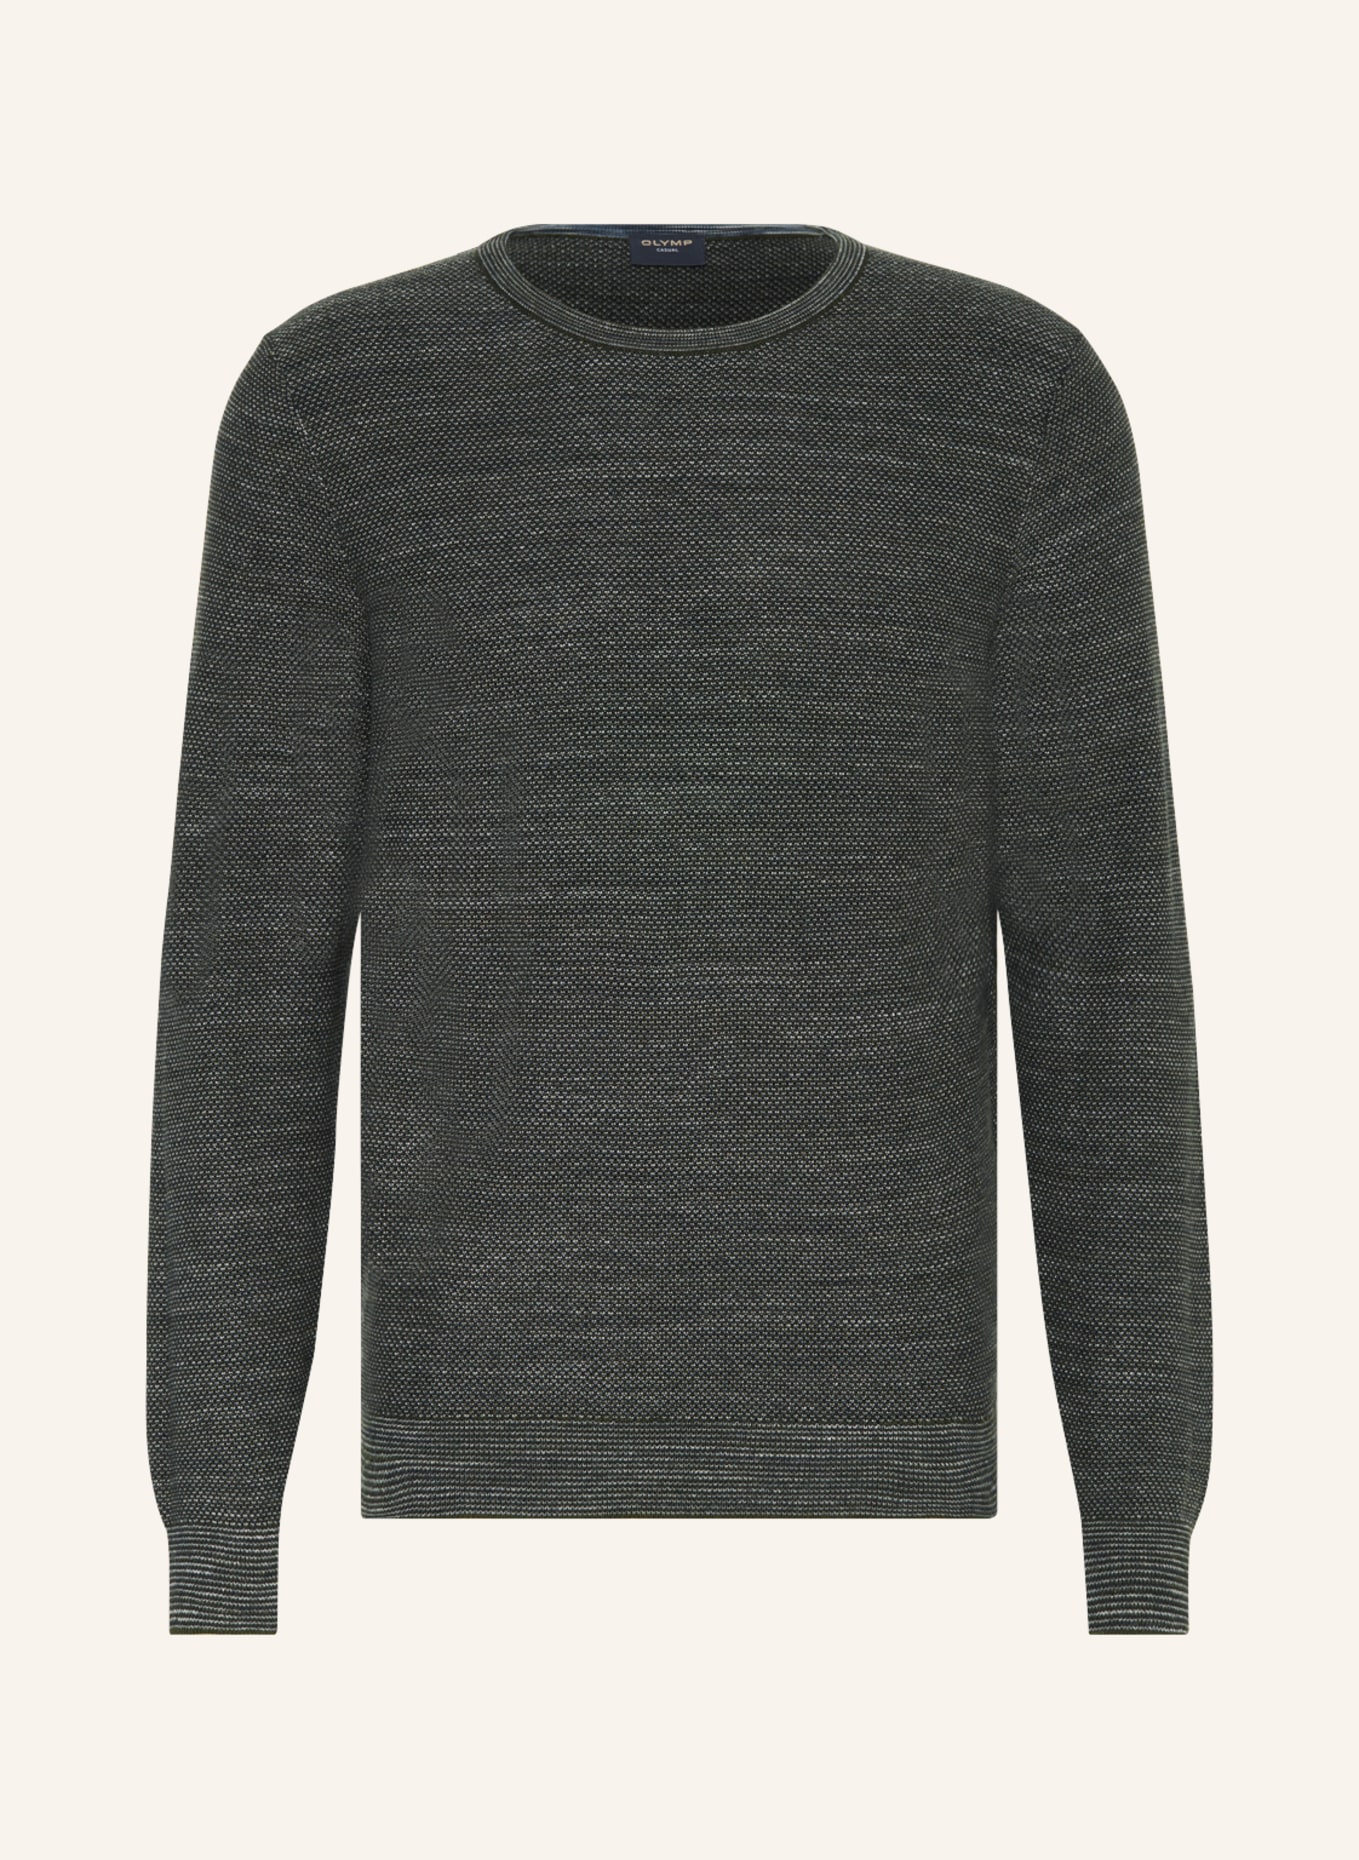 OLYMP Pullover, Farbe: GRAU/ GRÜN/ HELLGRAU (Bild 1)